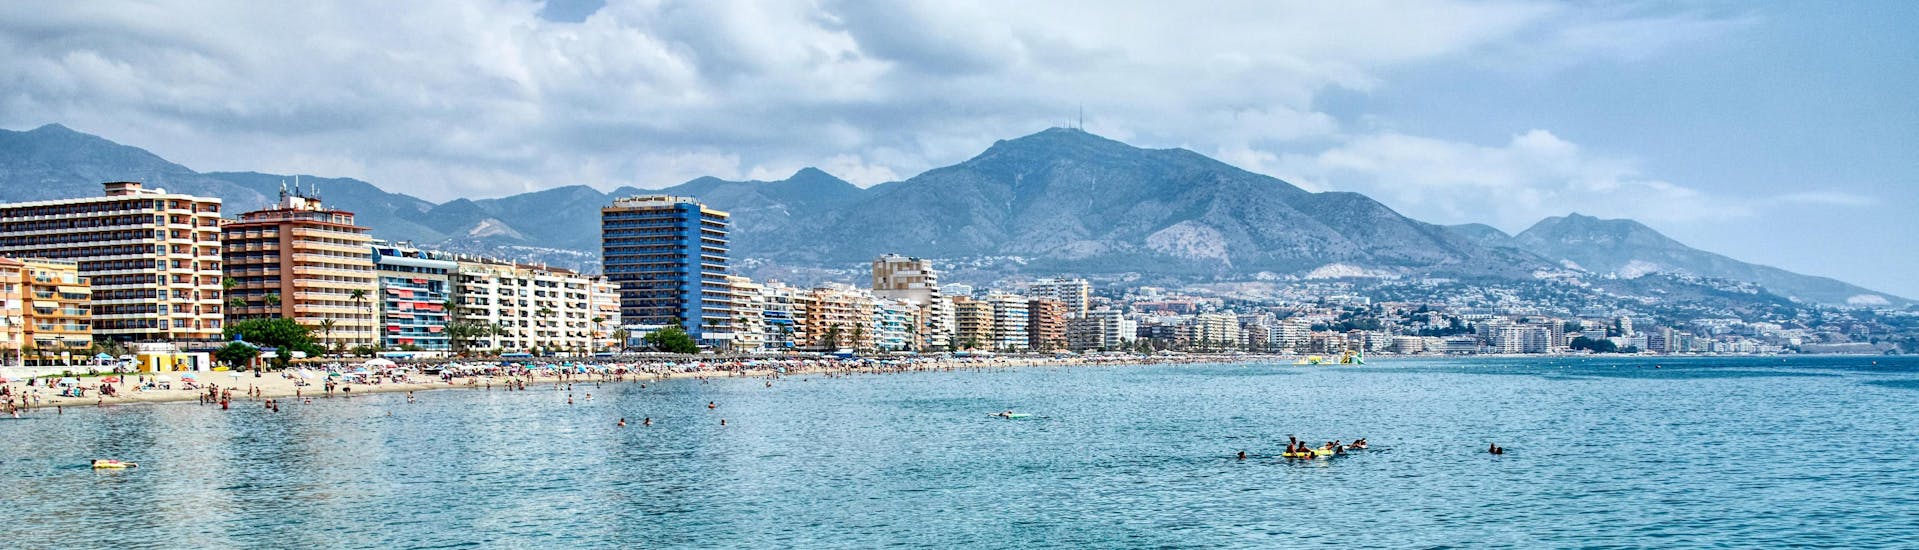 Vista della costa di Fuengirola, Málaga, una destinazione turistica popolare per gli sport acquatici e le gite in barca.